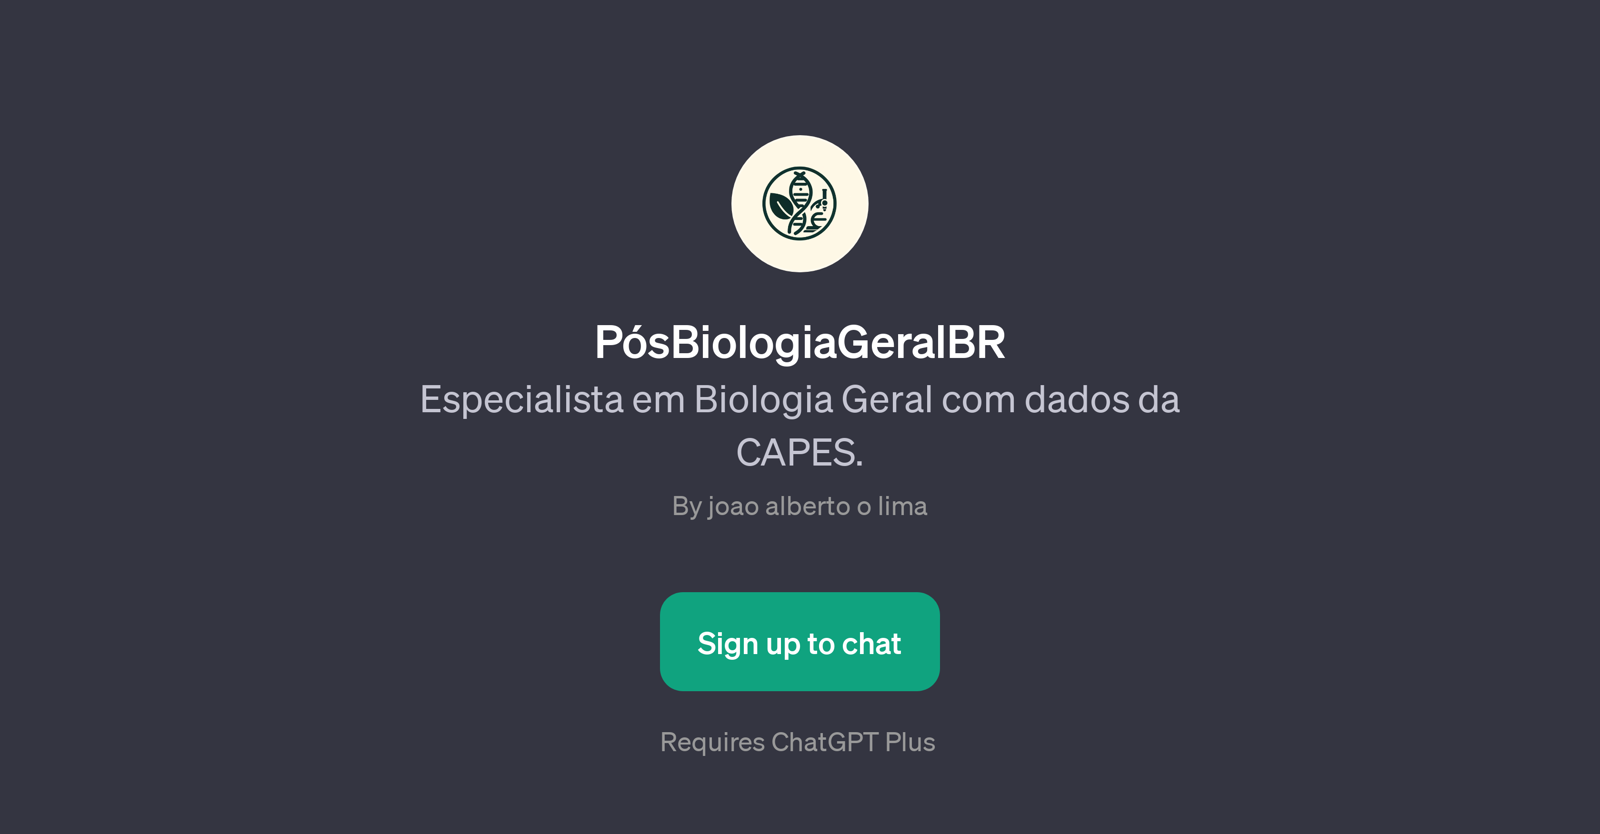 PsBiologiaGeralBR website